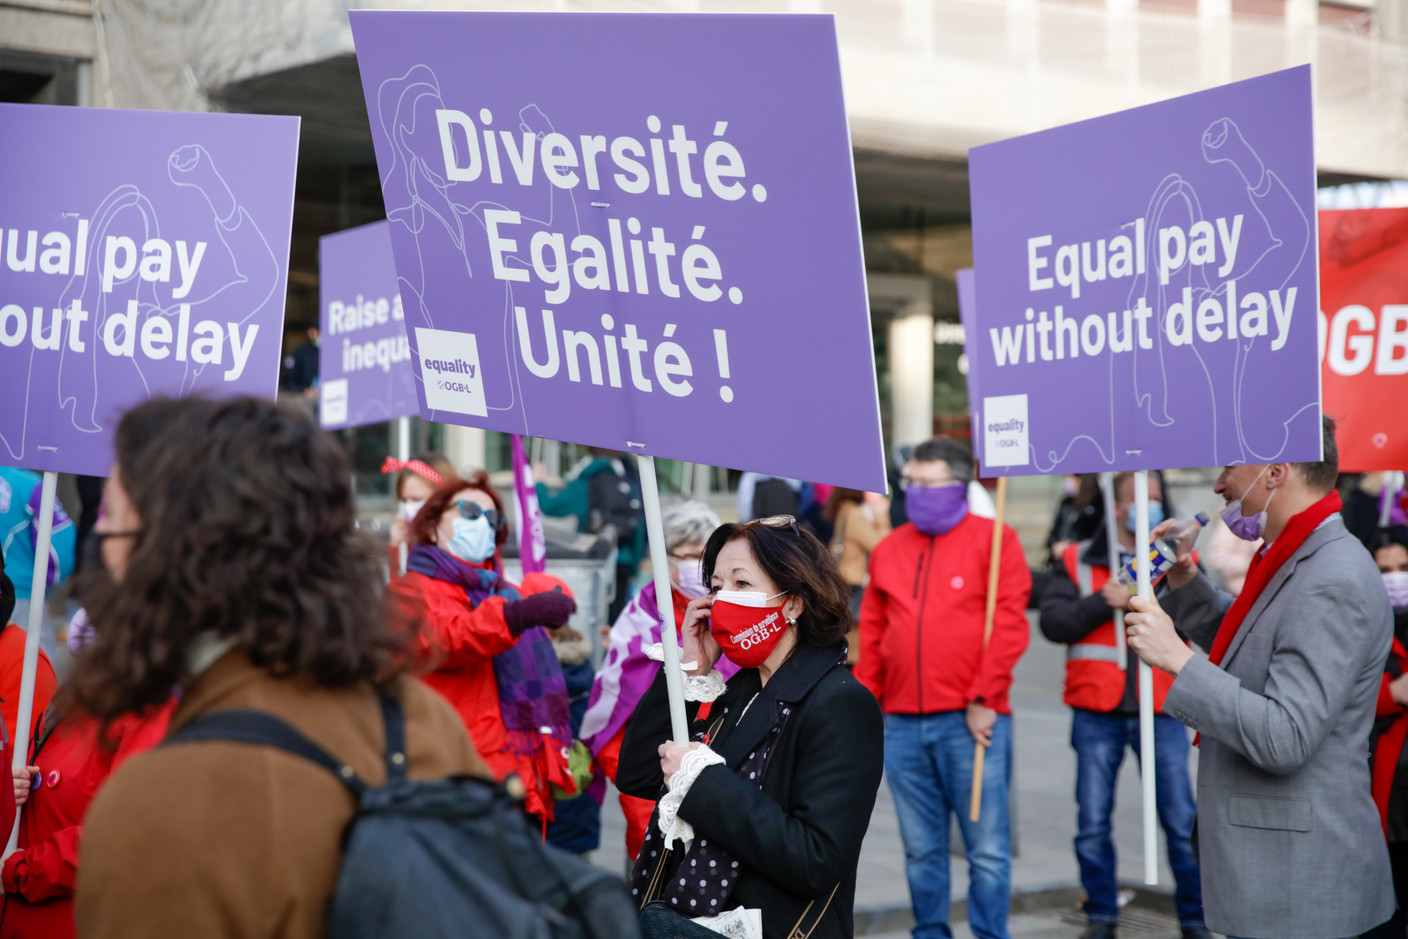 «Diversité, égalité, unité», «Equal pay without delay», quelques-uns des slogans que l’on pouvait lire sur les pancartes. (Photo: Romain Gamba / Maison Moderne)